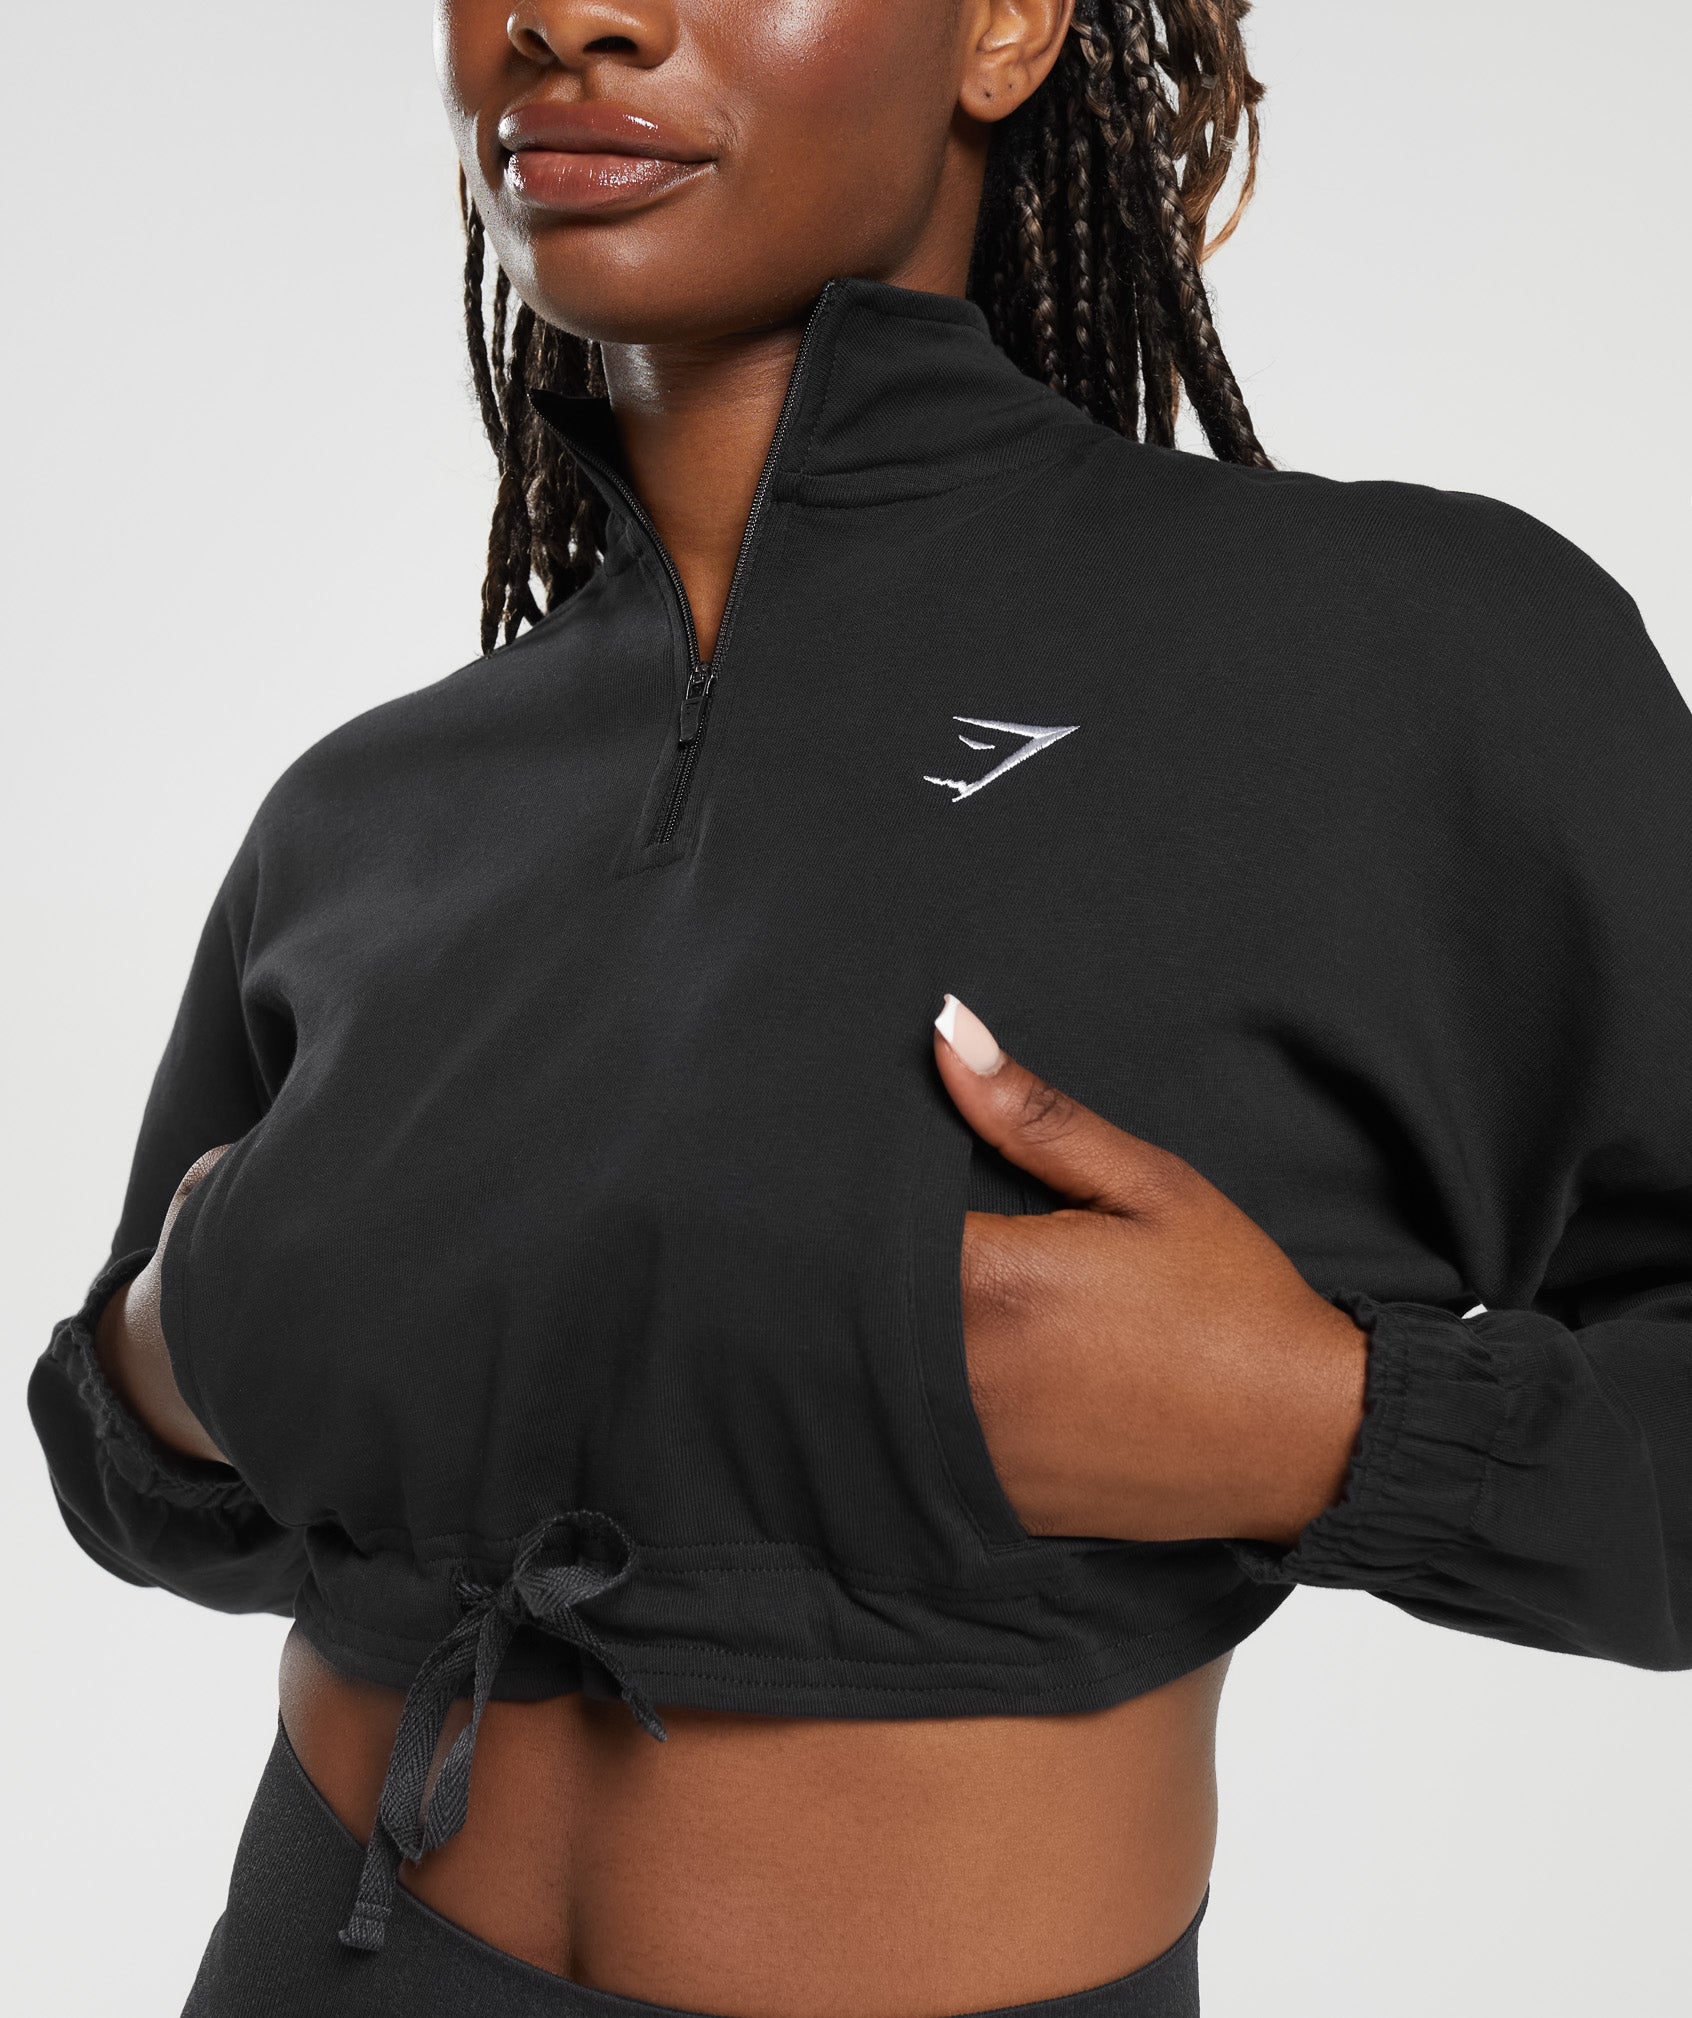 Women's Zip Up Hoodies – Full Zip Hoodies